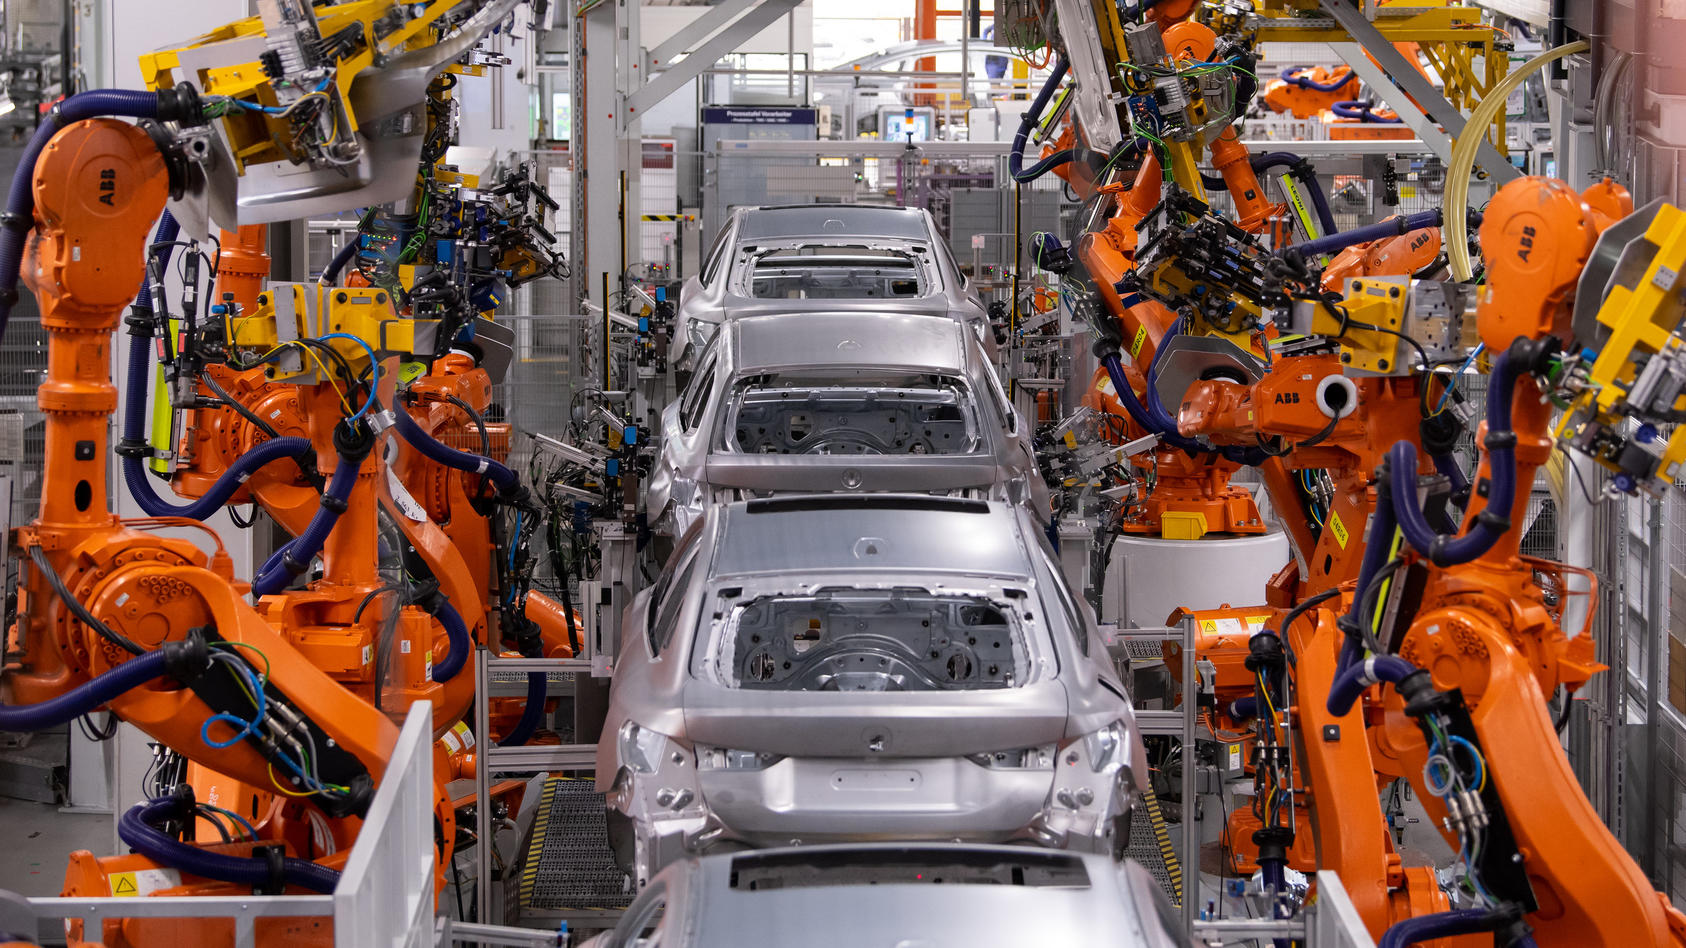 22.10.2021, Bayern, München: Roboter arbeiten an der Karosserie von verschiedenen BMW-Modellen im Stammwerk. Drei Monate nach dem Elektro-SUV BMW iX hat der Autobauer jetzt auch die Serienproduktion des vollelektrischen BMW i4 gestartet. Im Stammwerk